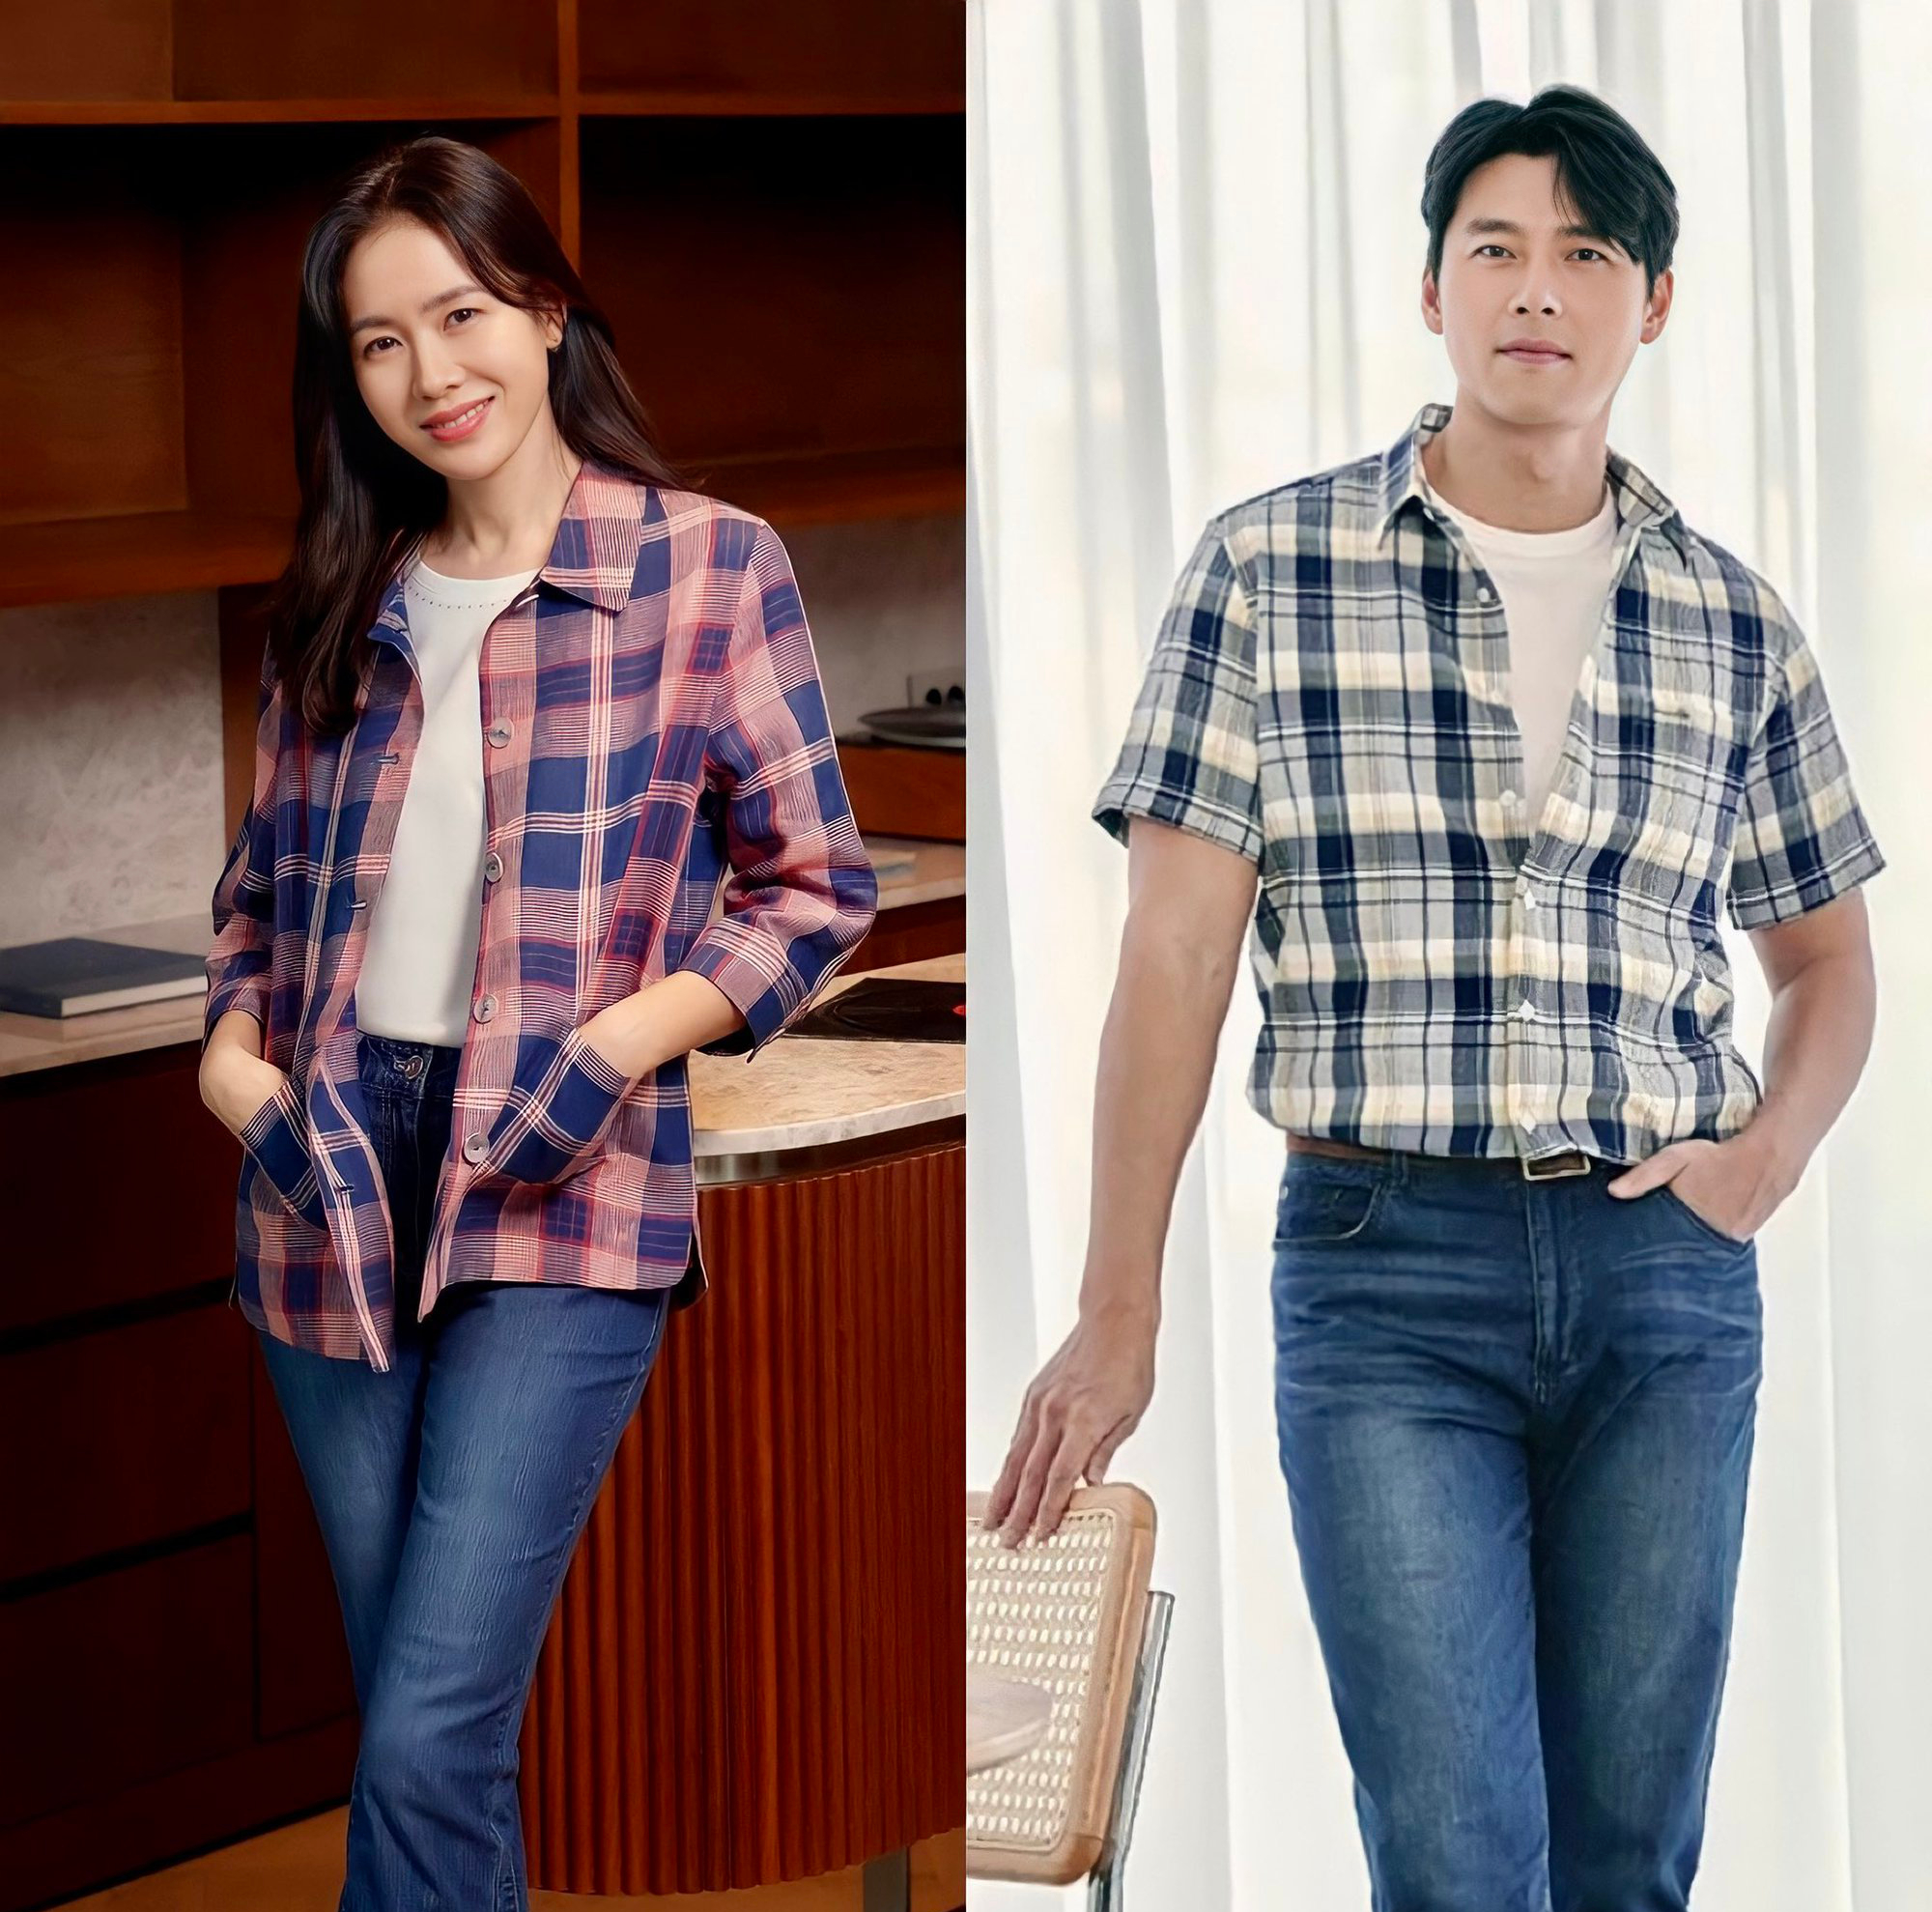 Vợ chồng Hyun Bin - Son Ye Jin diện đồ đôi xuất hiện sau tuần trăng mật - Ảnh 2.